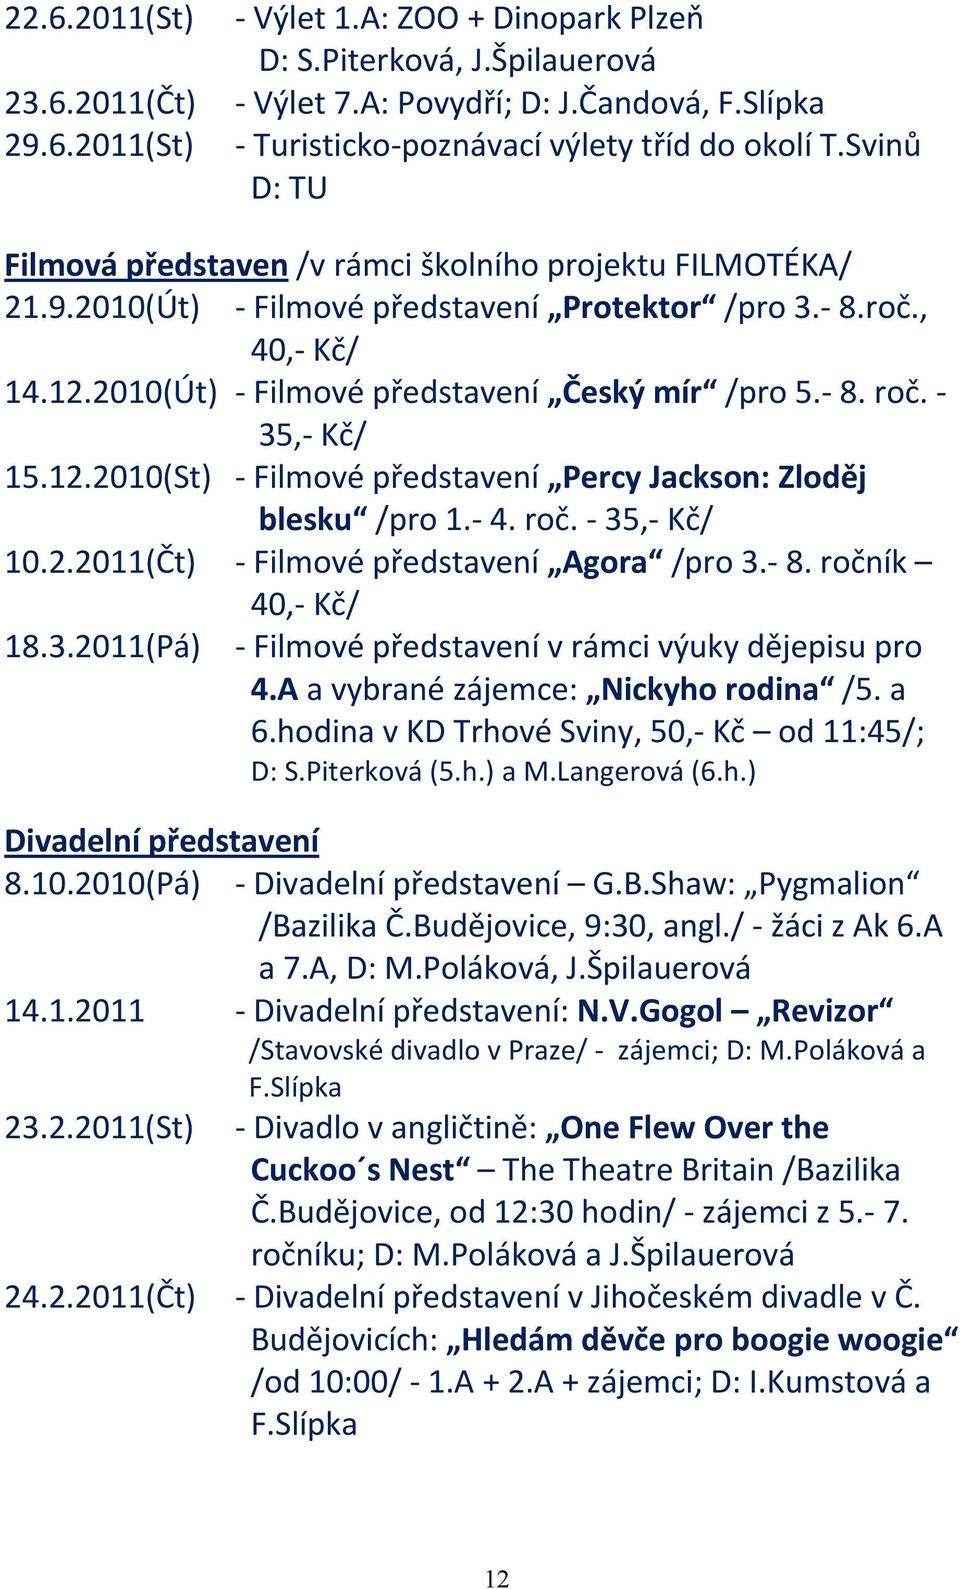 35, Kč/ 15.12.2010(St) Filmové představení Percy Jackson: Zloděj blesku /pro 1. 4. roč. 35, Kč/ 10.2.2011(Čt) Filmové představení Agora /pro 3. 8. ročník 40, Kč/ 18.3.2011(Pá) Filmové představení v rámci výuky dějepisu pro 4.